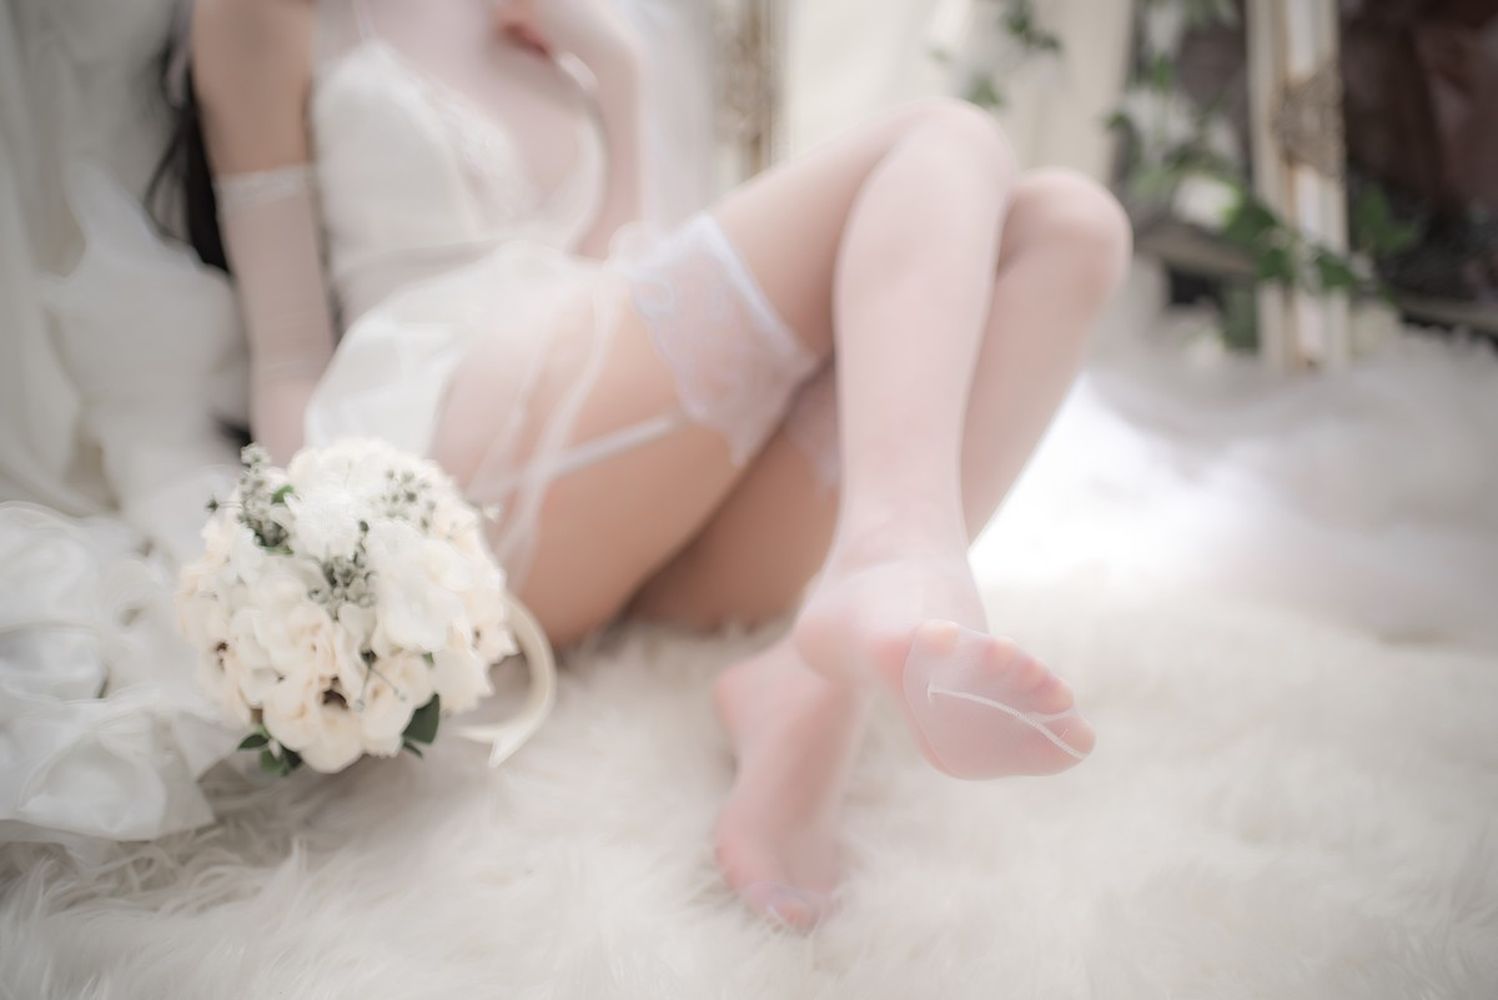 性感尤物清水由乃薄透婚纱配蕾丝吊袜爱宕婚纱主题写真